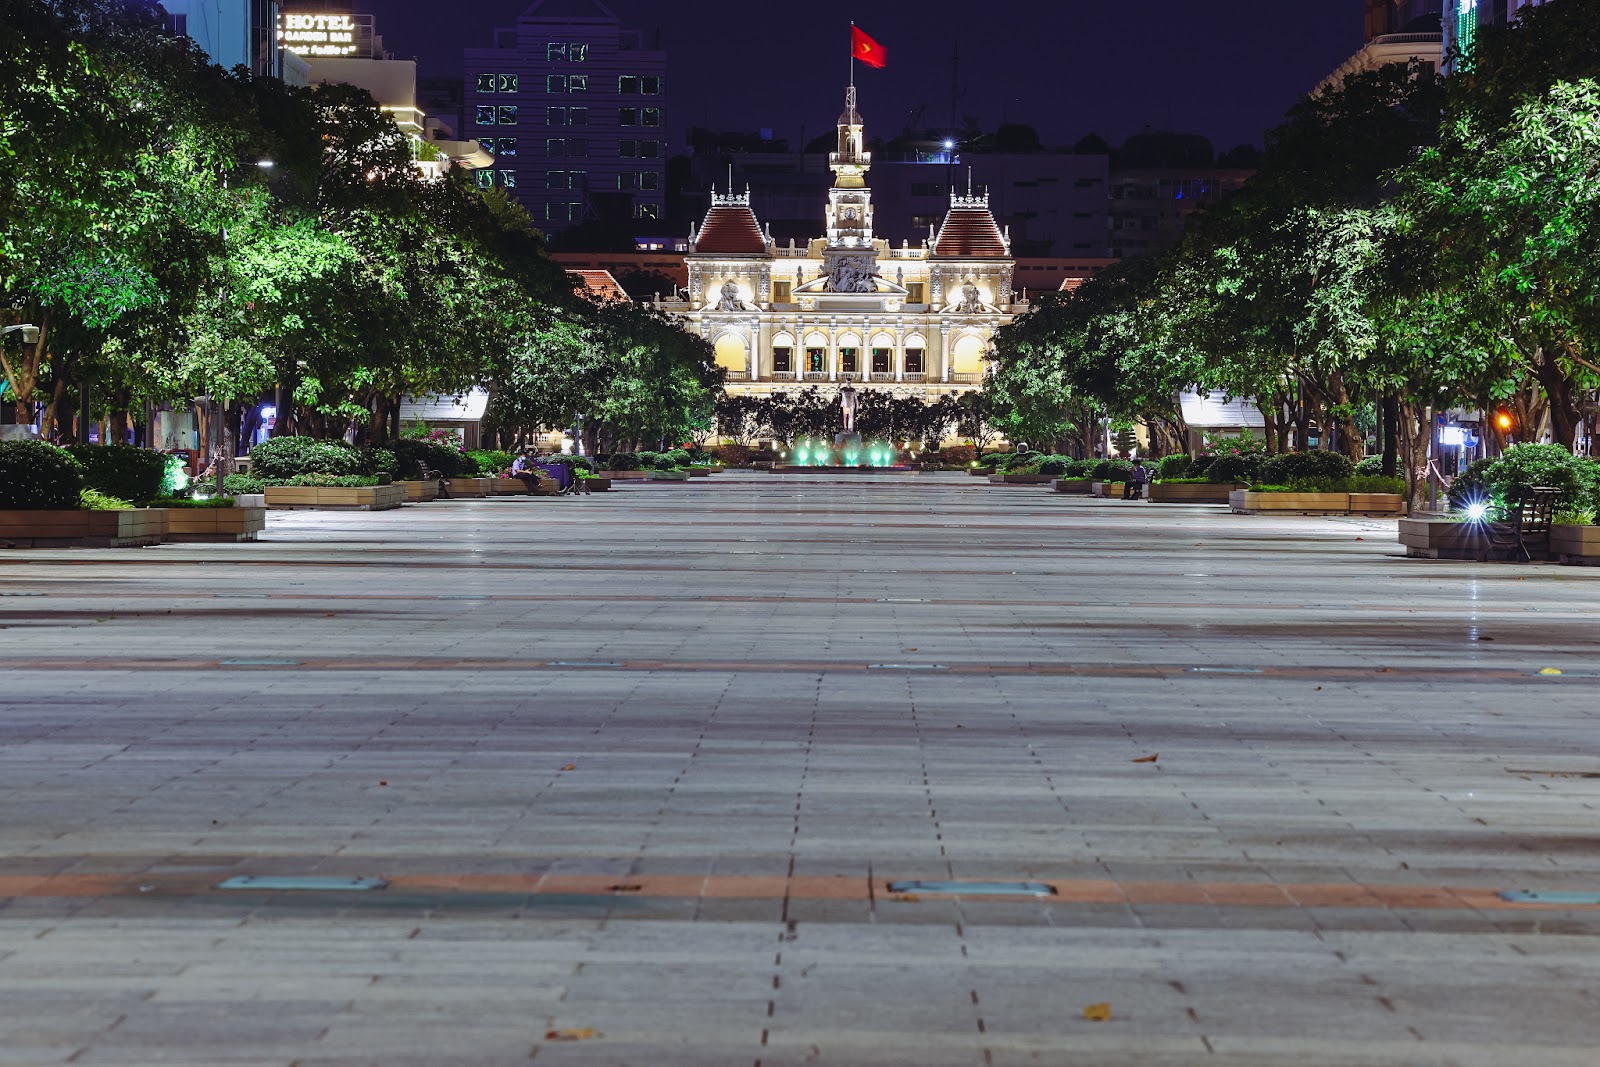 “Bổ túc” đường phố Sài Gòn lúc lên đèn dành cho người ở nhà lâu quá - 5